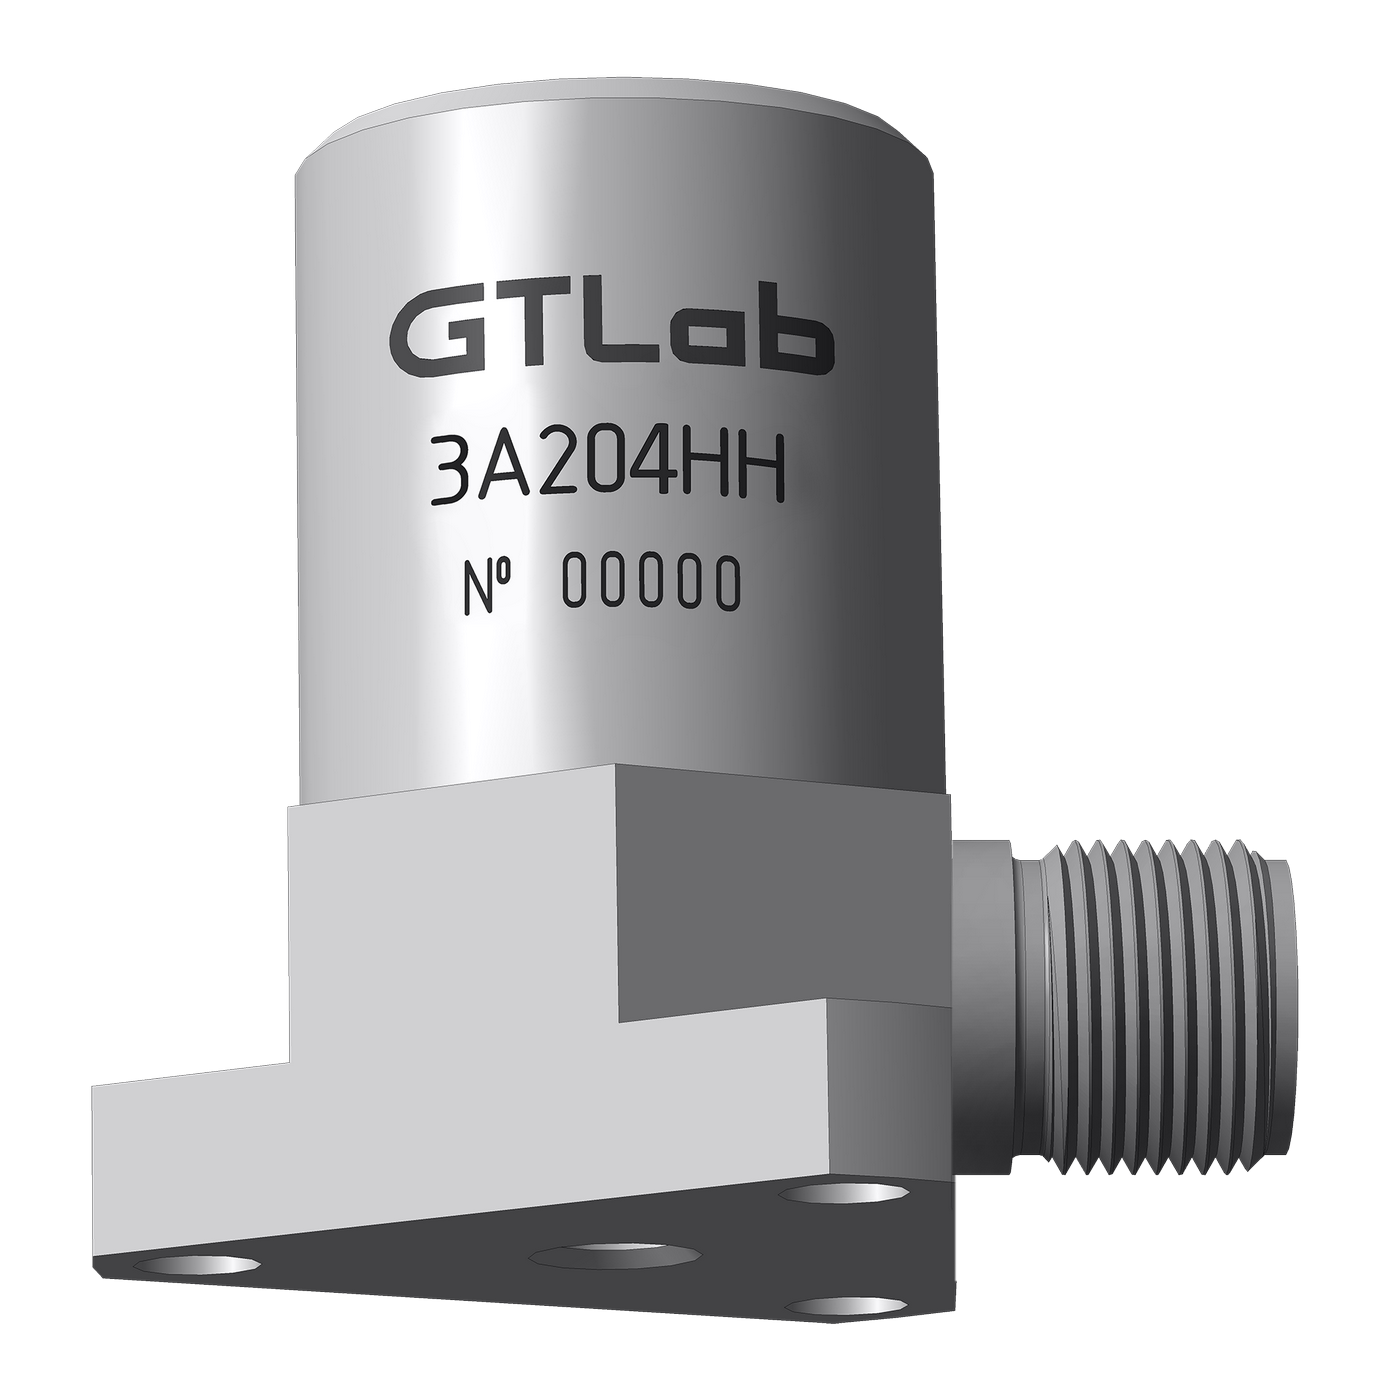 Датчик виброперемещения с токовым выходом промышленный GTLAB 3A204HH-80 Дозиметры